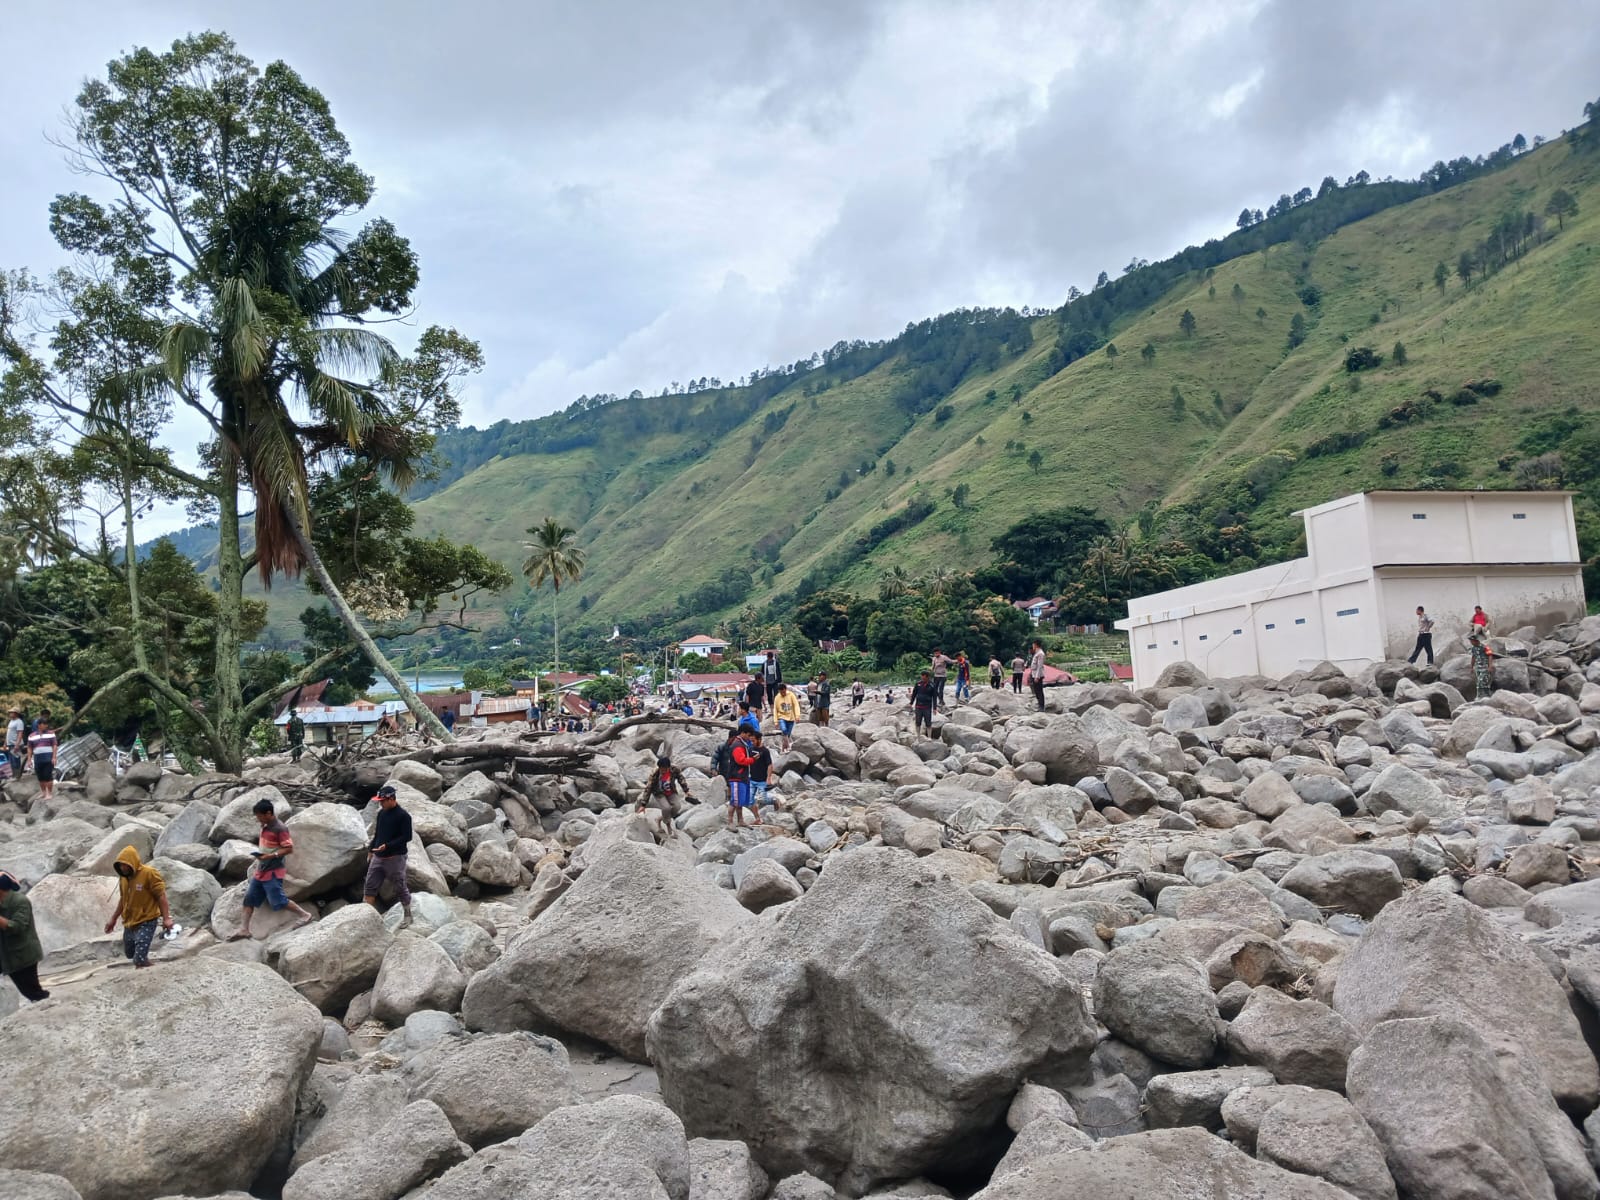 Longsor Batu Ratakan Puluhan Rumah Di Baktiraja, 12 Orang Hilang